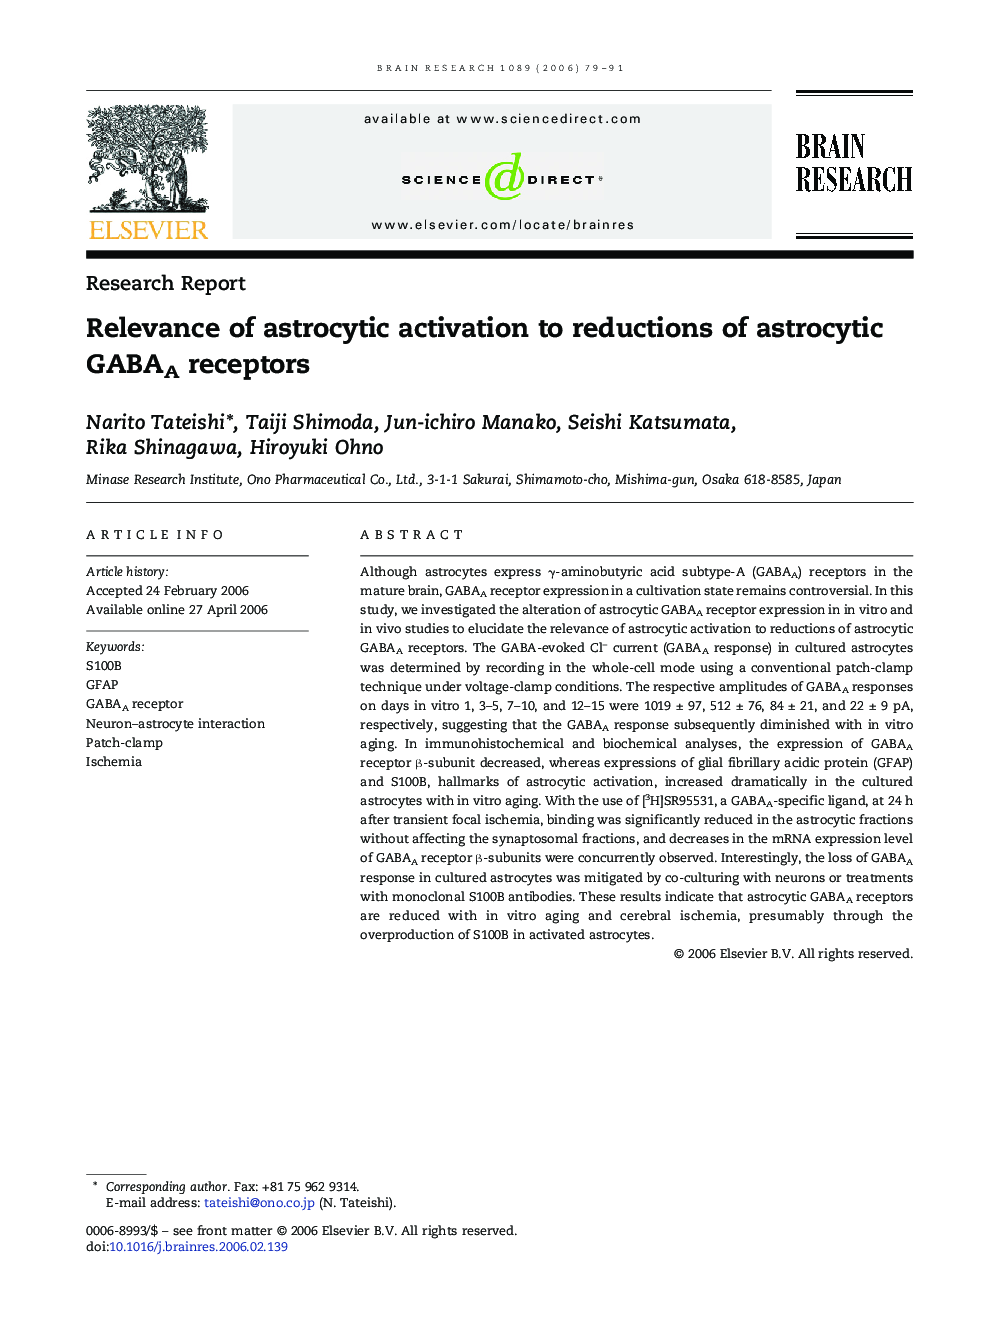 Relevance of astrocytic activation to reductions of astrocytic GABAA receptors